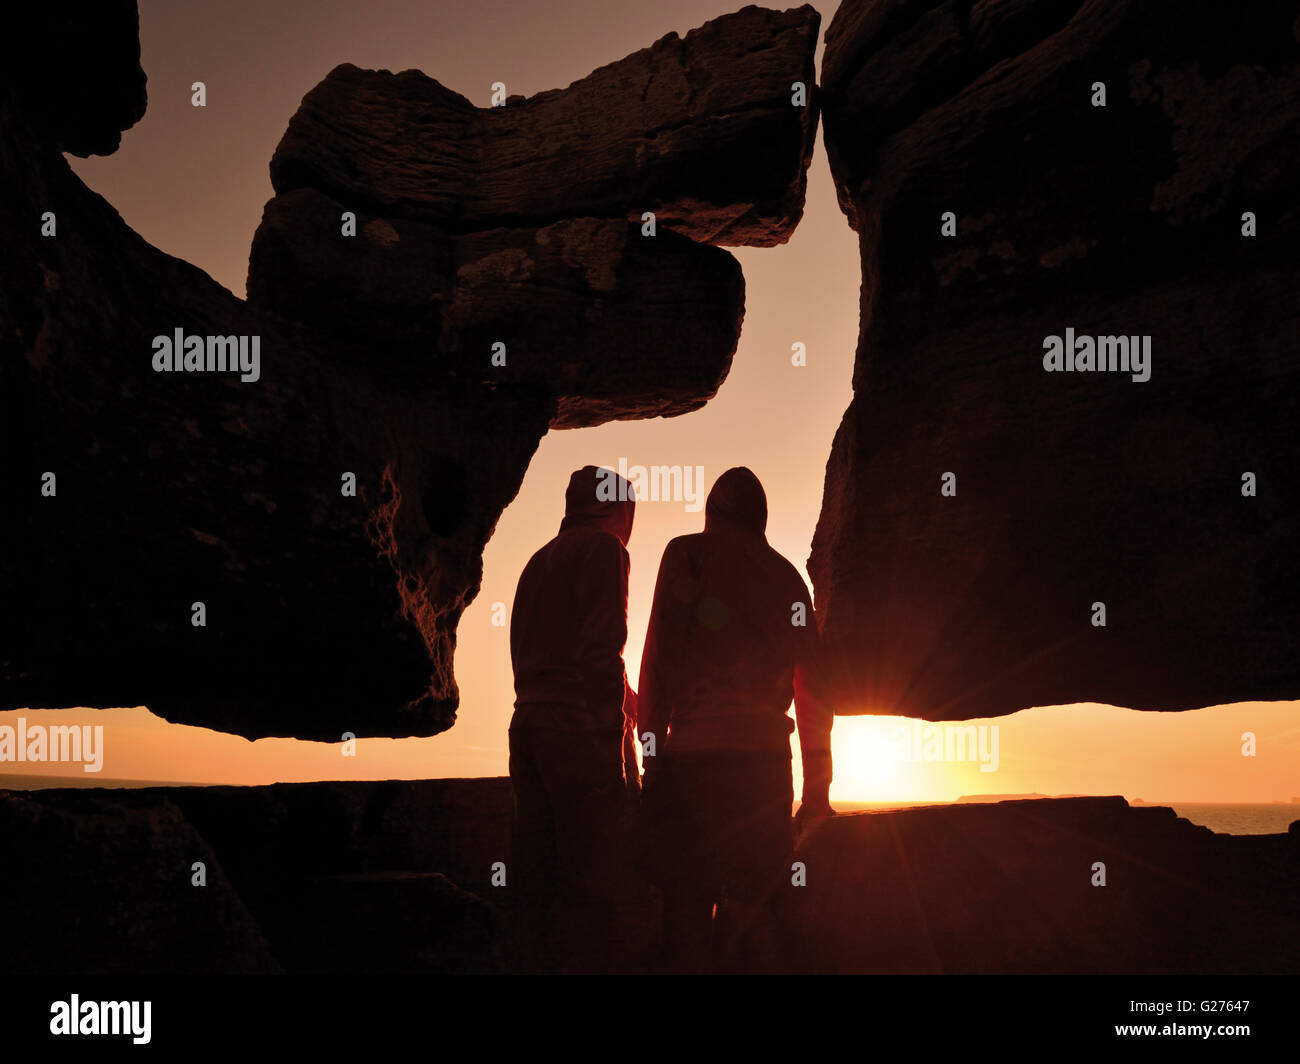 Portogallo: Silhouette di due persone a guardare il tramonto panoramico con curiosa formazione rocciosa a Capo Carvoeiro Foto Stock